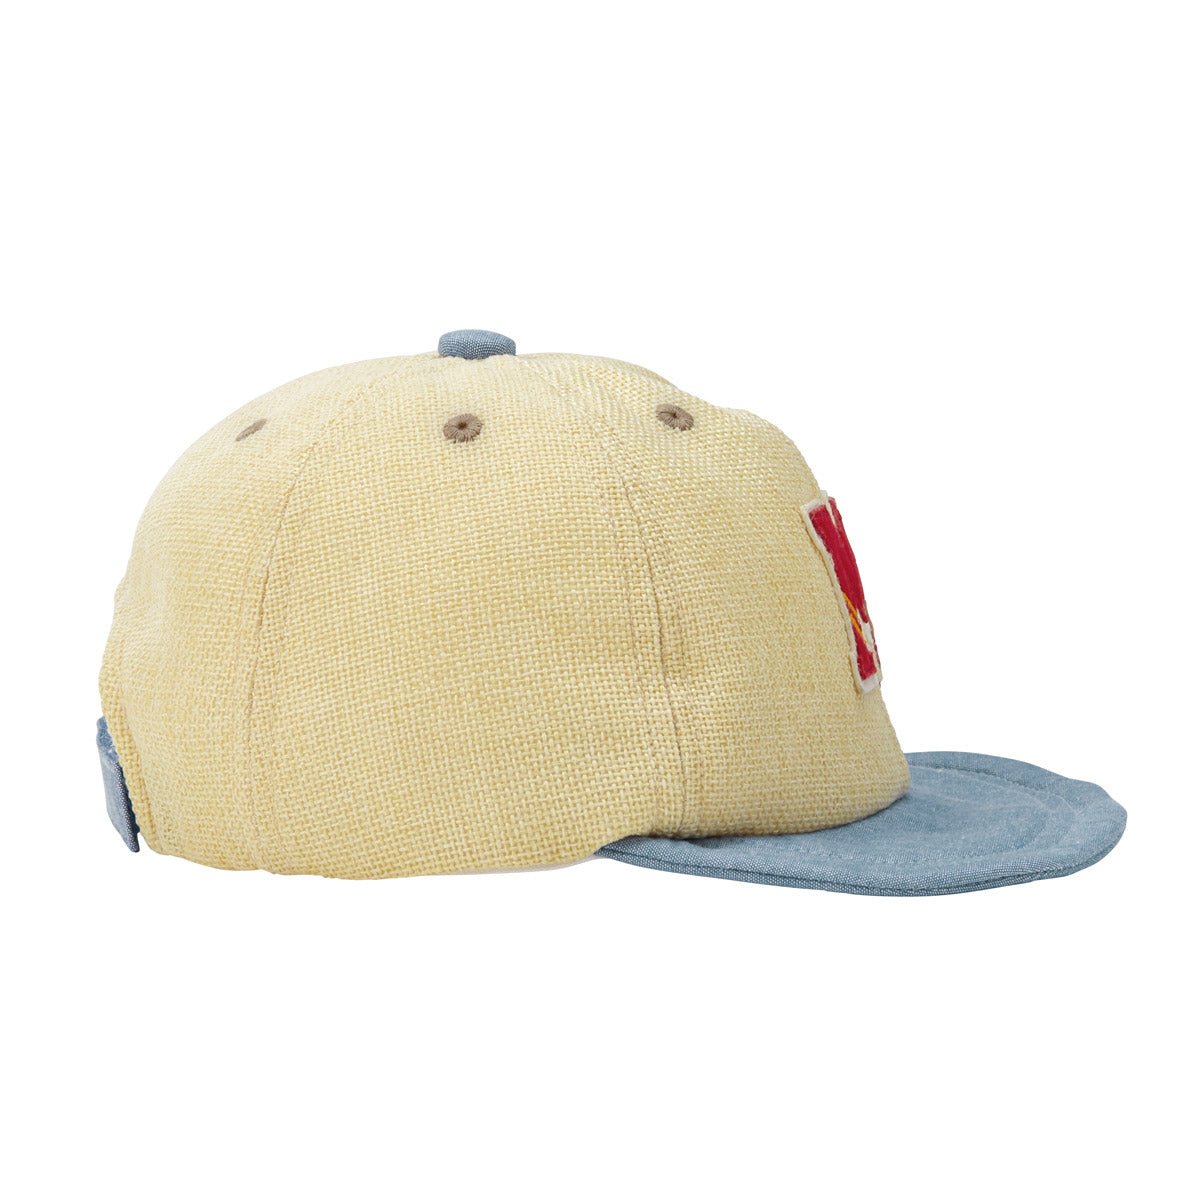 Simply M Baseball Cap (UV Protection) – MIKI HOUSE USA